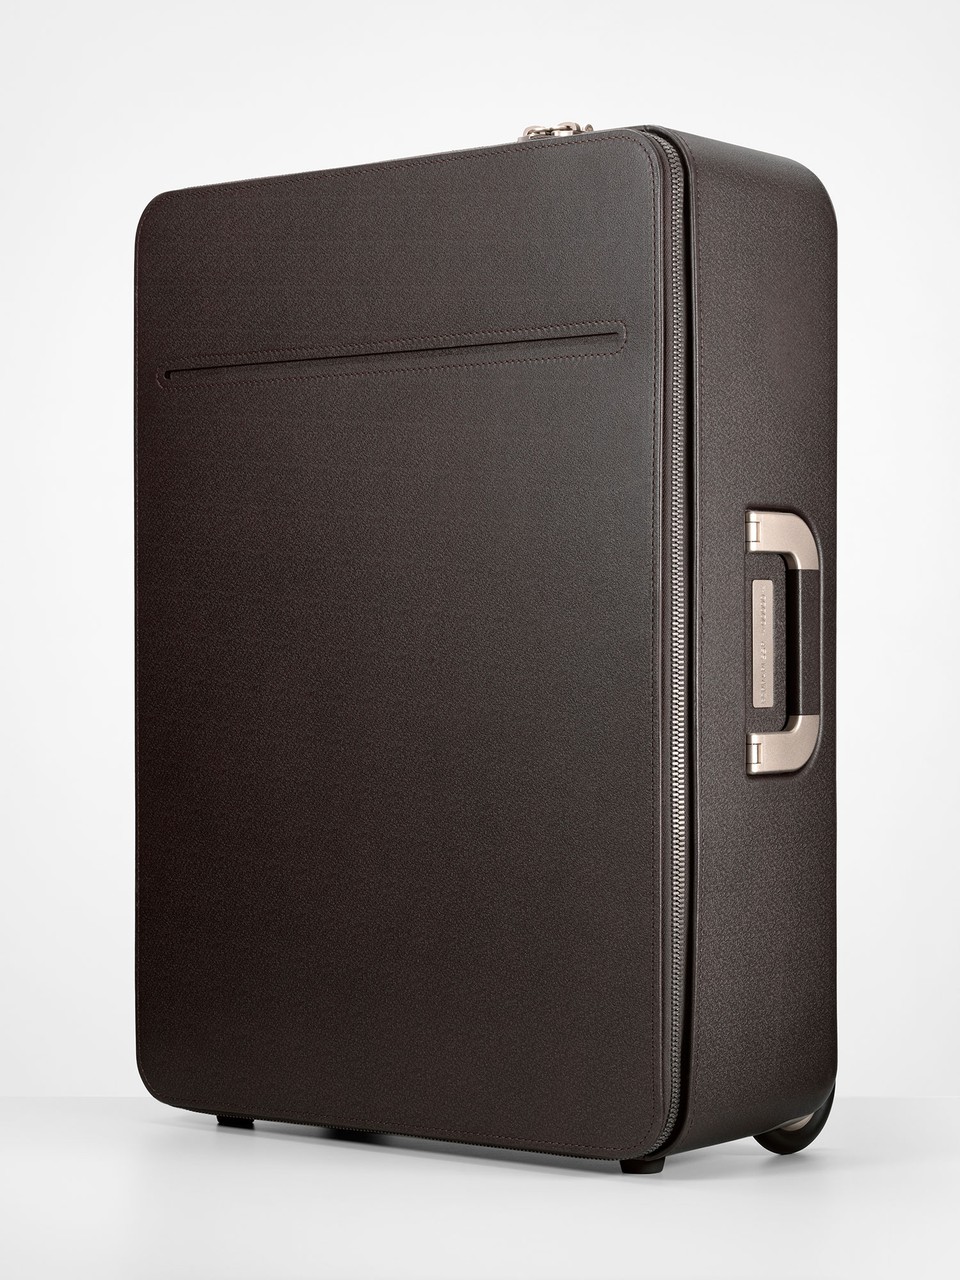 Luggage | Marc Newson Ltd